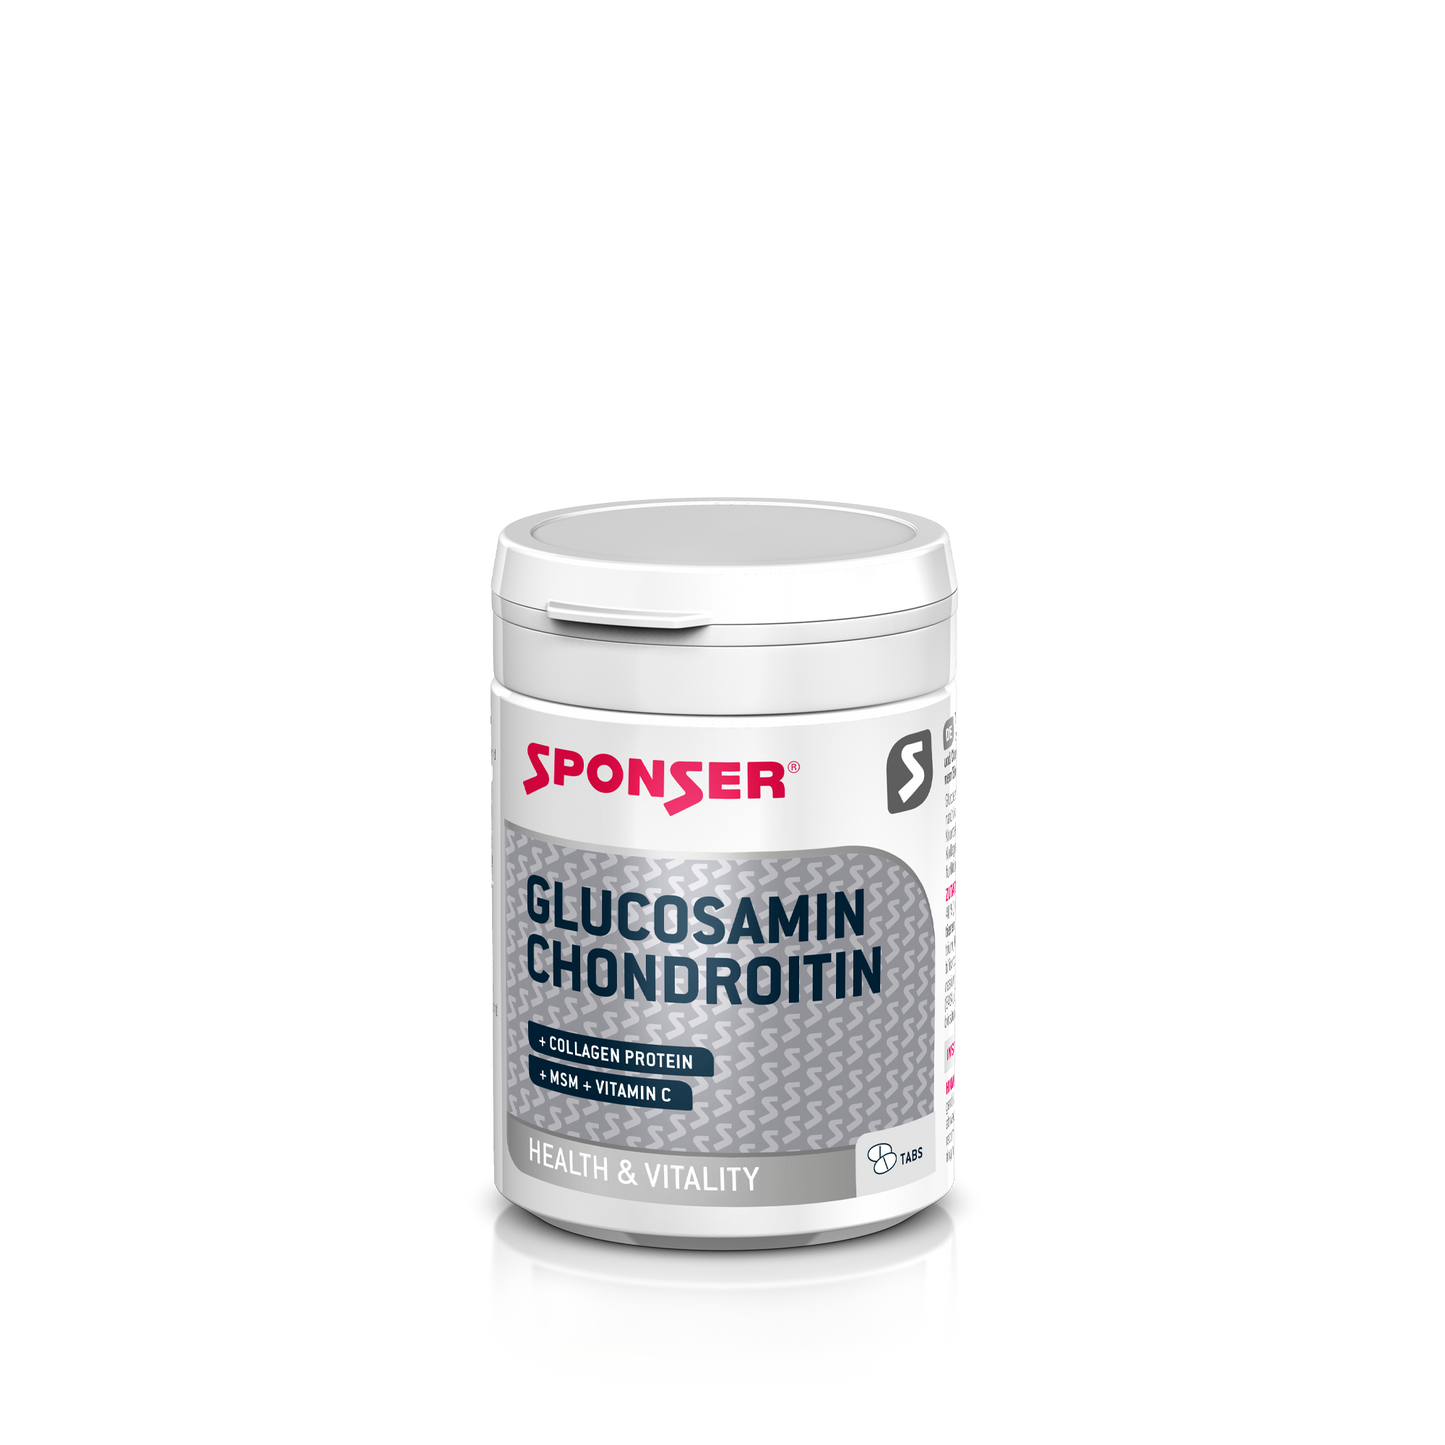 SPONSER GLUCOSAMIN CHONDROITIN 180 CAPS